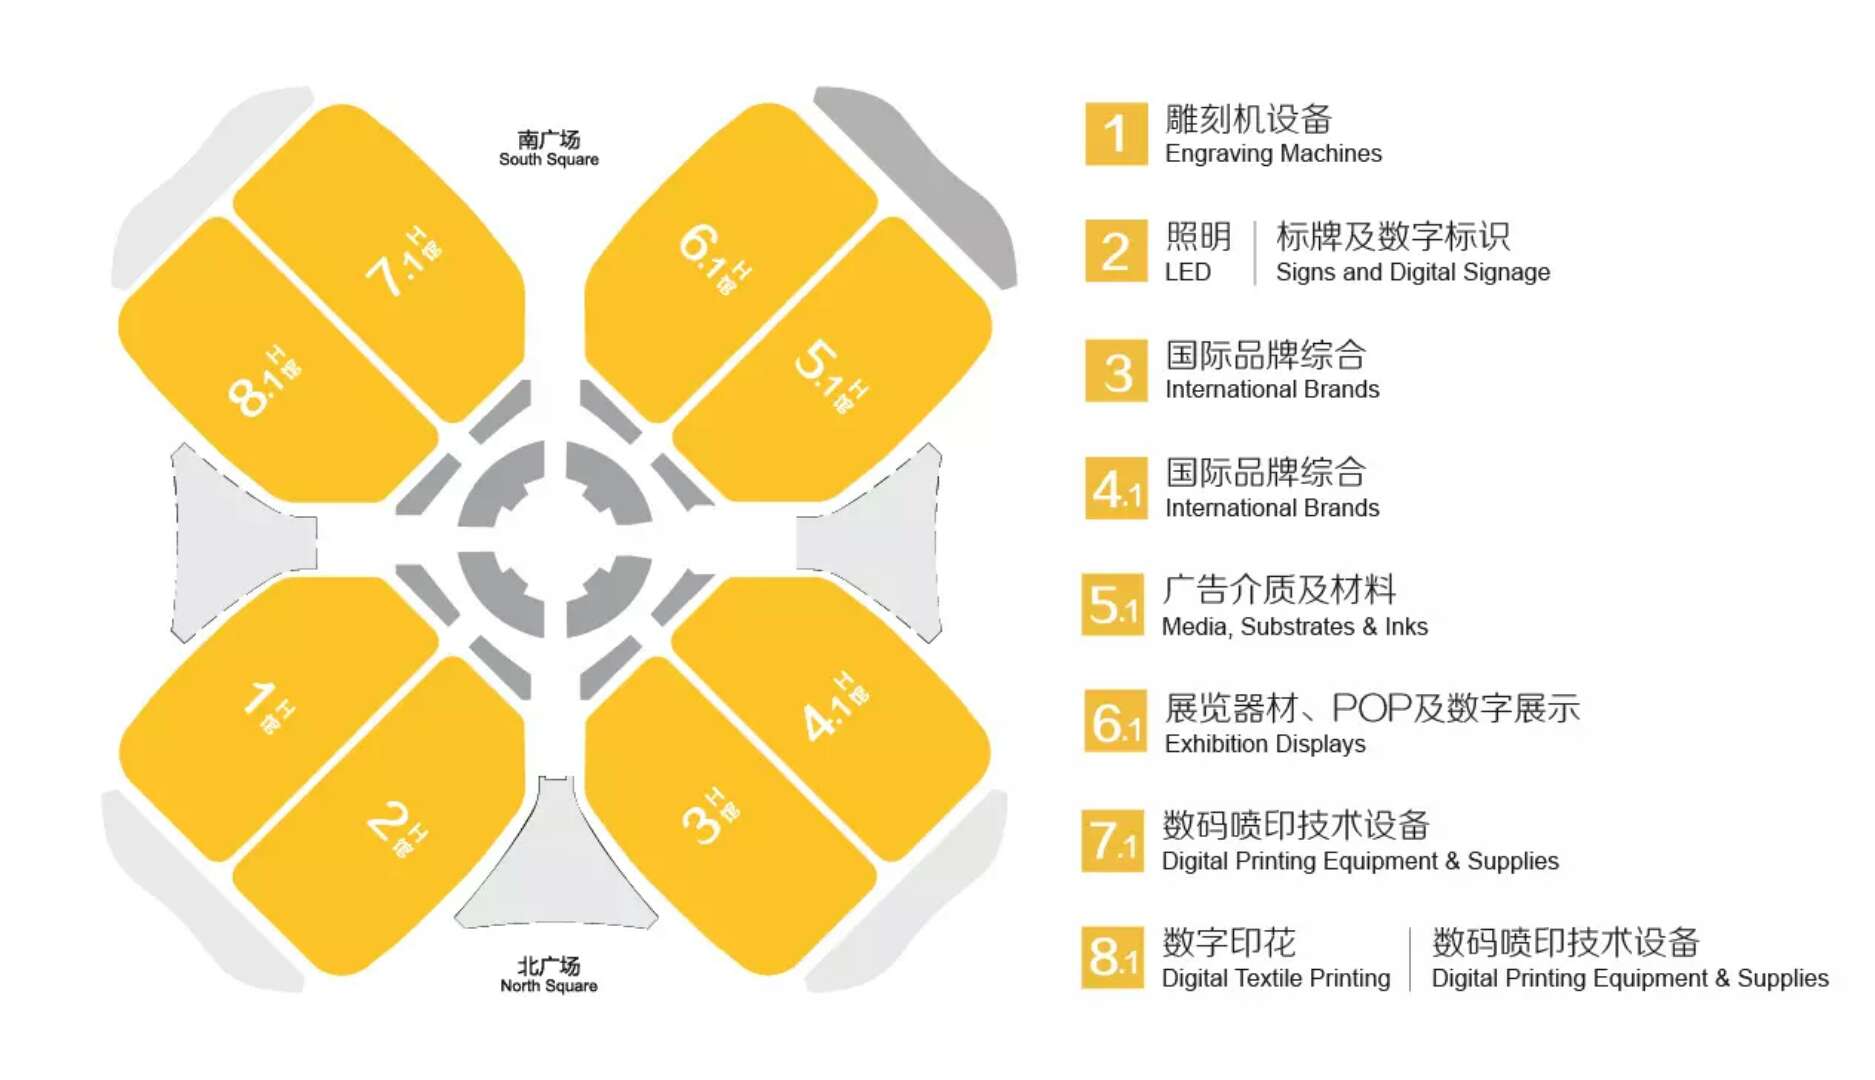 2019年上海广告展场馆分布图11111111111